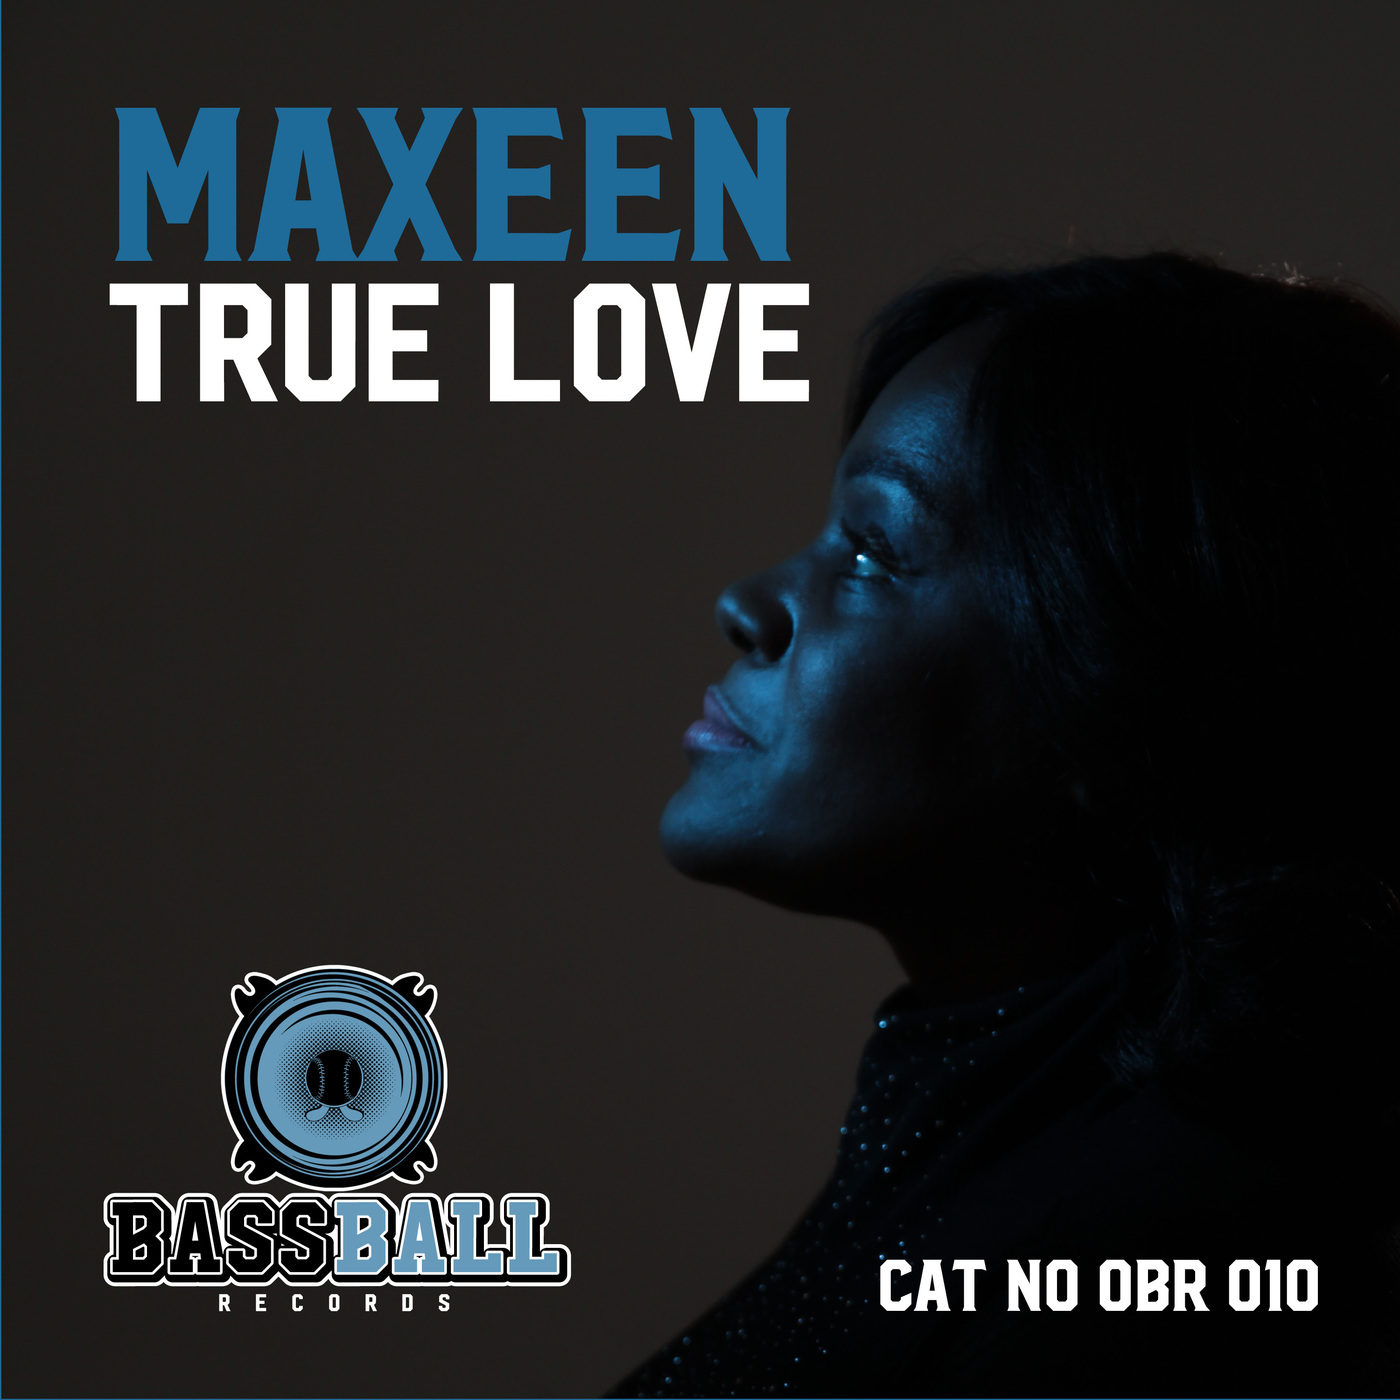 Maxeen - True Love / Bassball Records